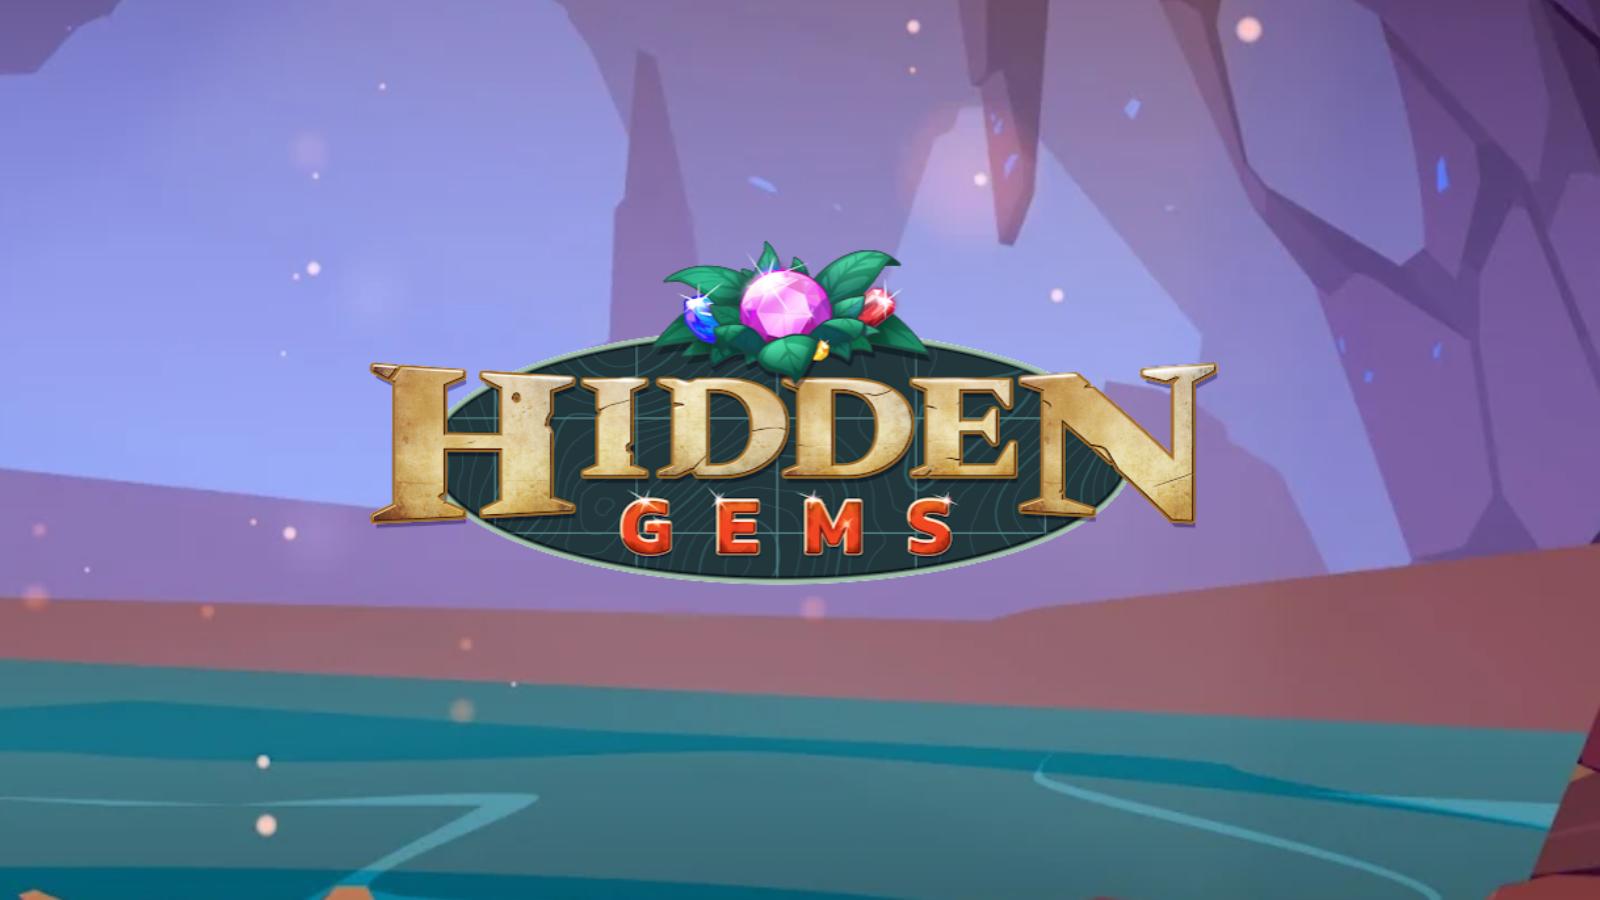 Pokemon Go season 11 hidden gems logo